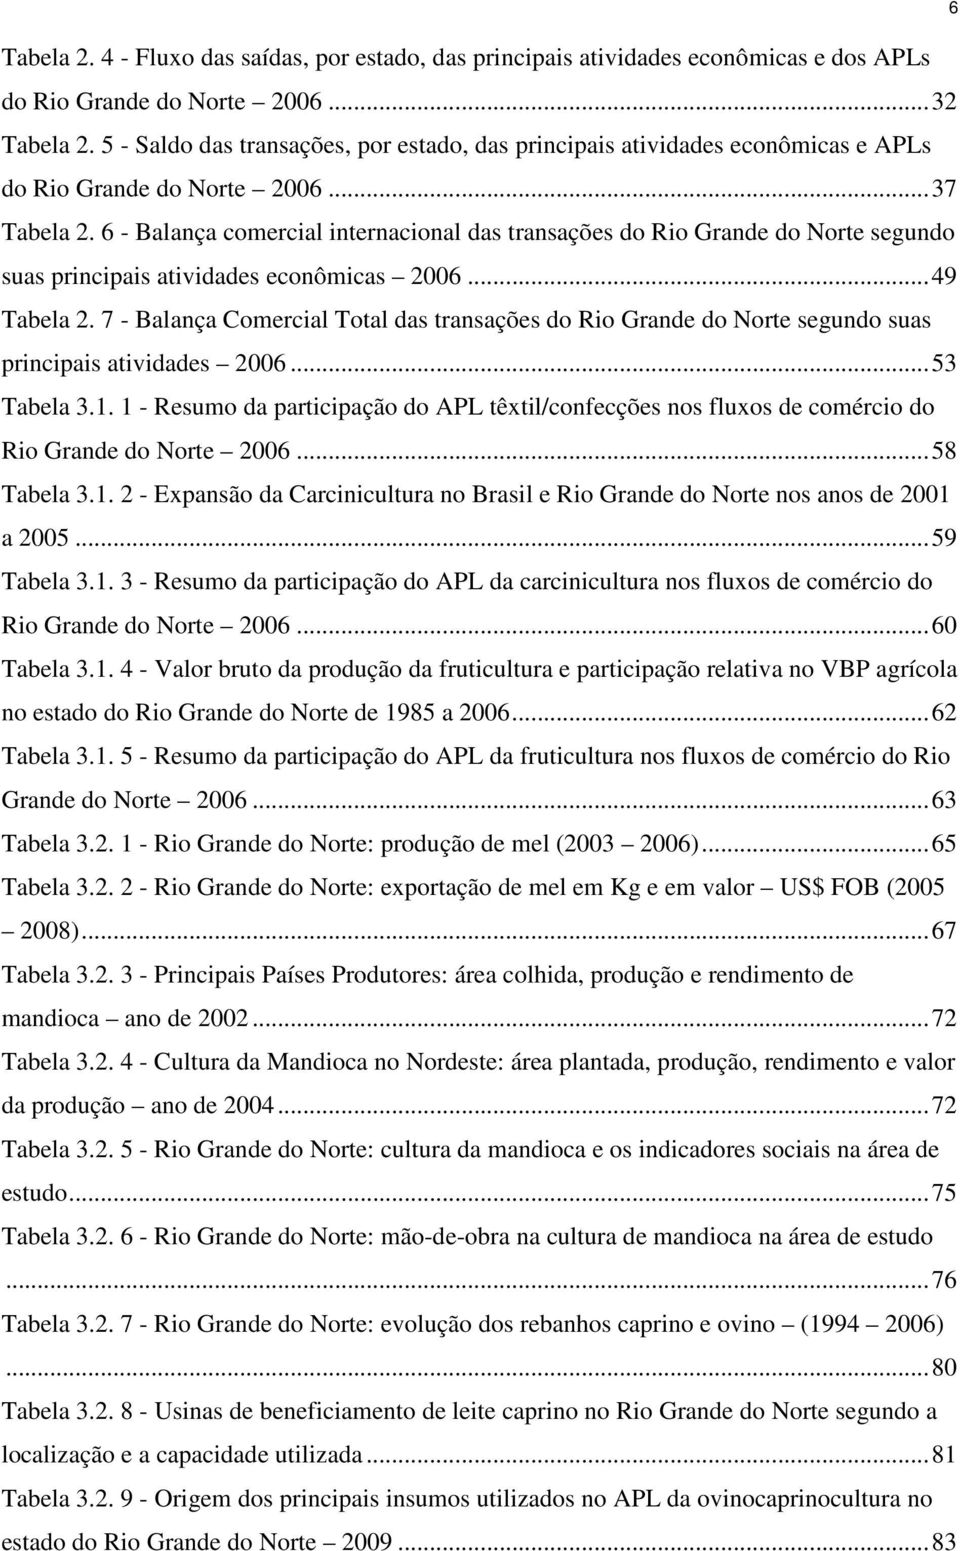 6 - Balança comercial internacional das transações do Rio Grande do Norte segundo suas principais atividades econômicas 2006... 49 Tabela 2.